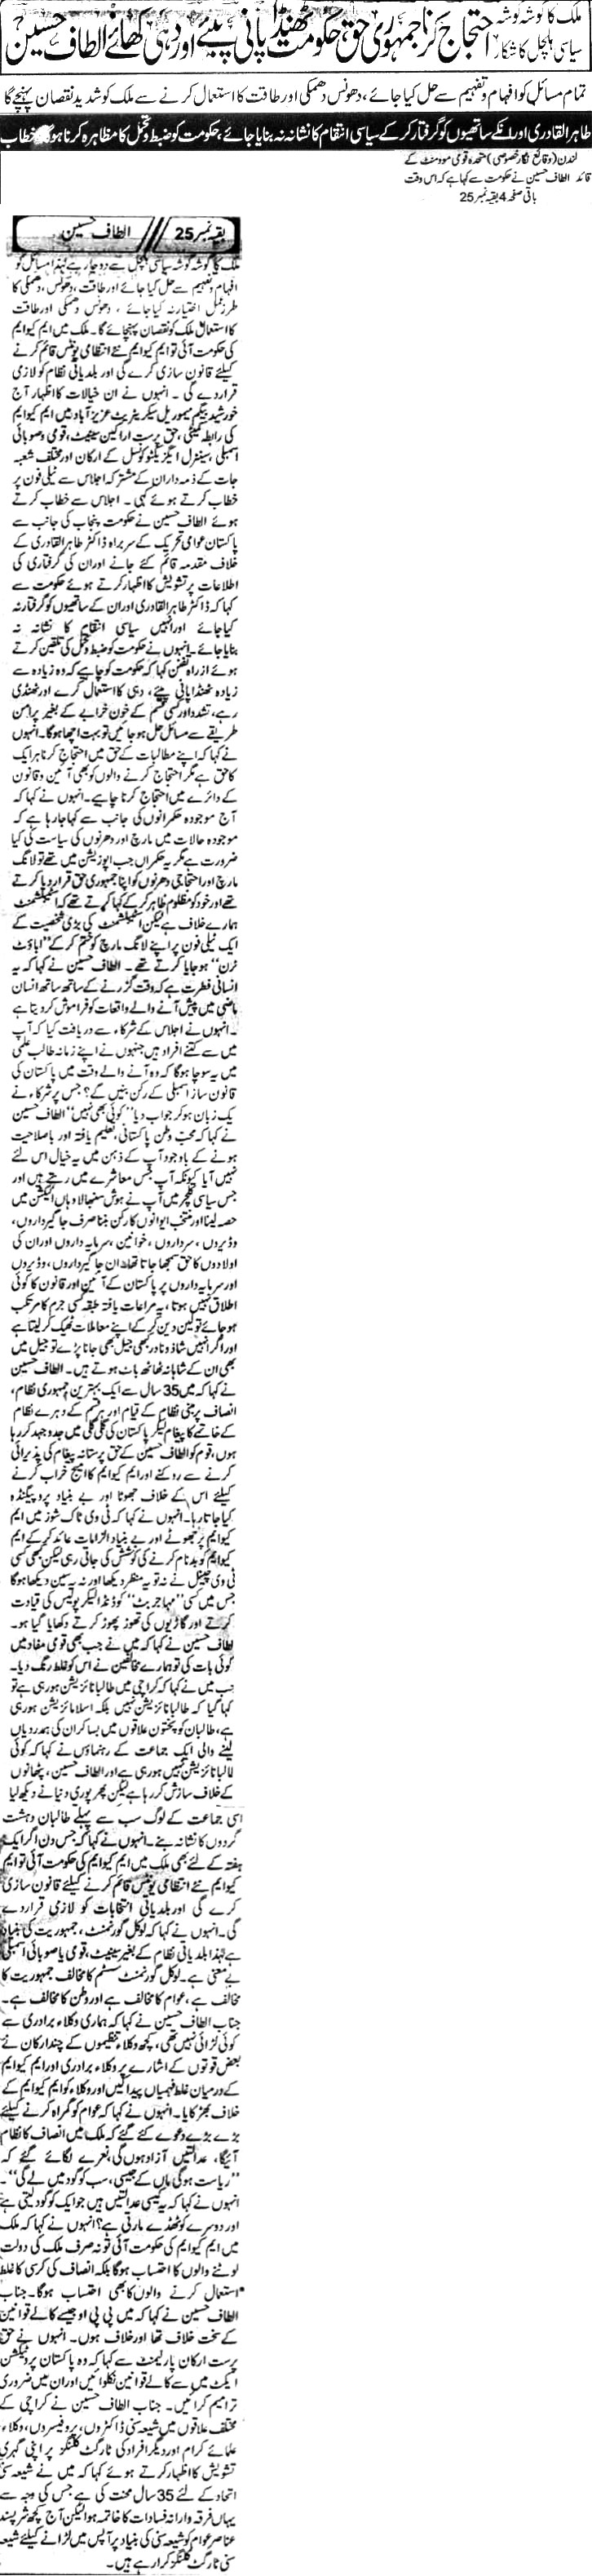 Minhaj-ul-Quran  Print Media Coverage Daily-Khabrain-Page-1